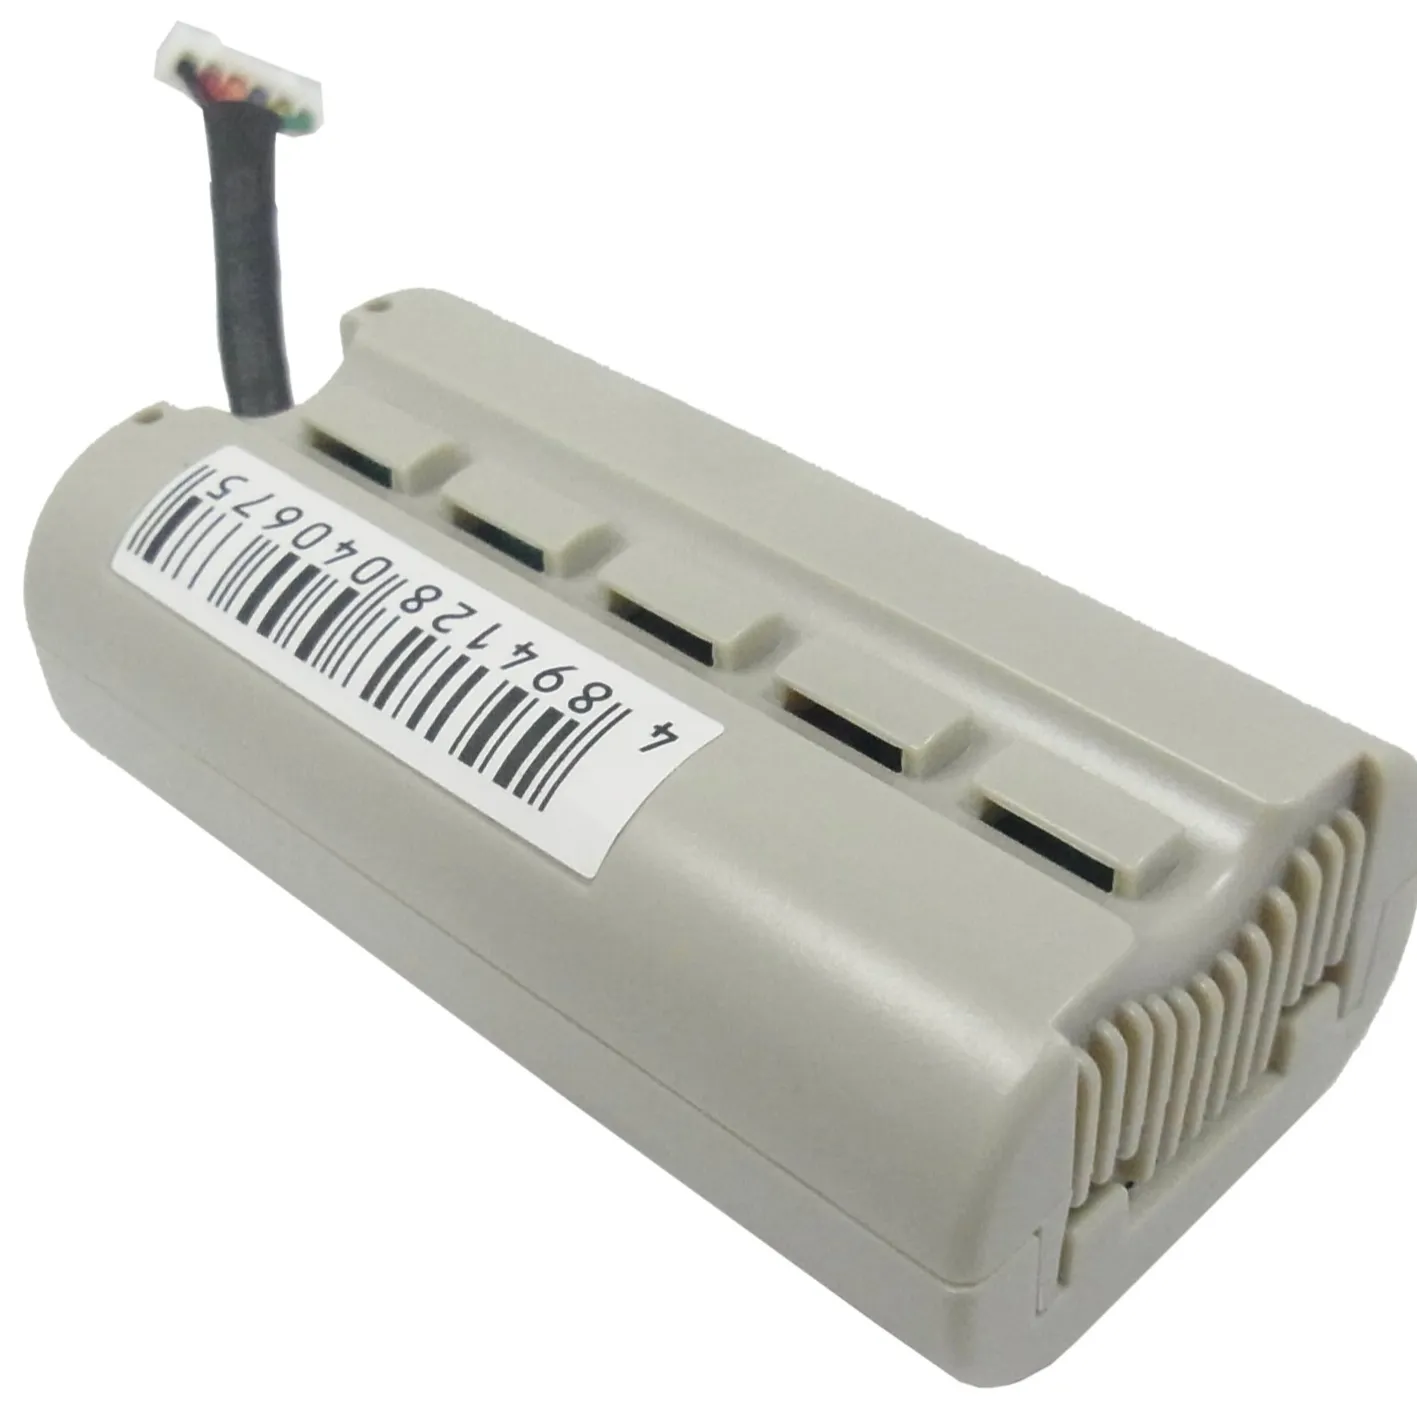 Batterie pour Pur Mini L'union Jack VL-61114 101A0 B1 VL-61114 VL-61949 3.7V/mA